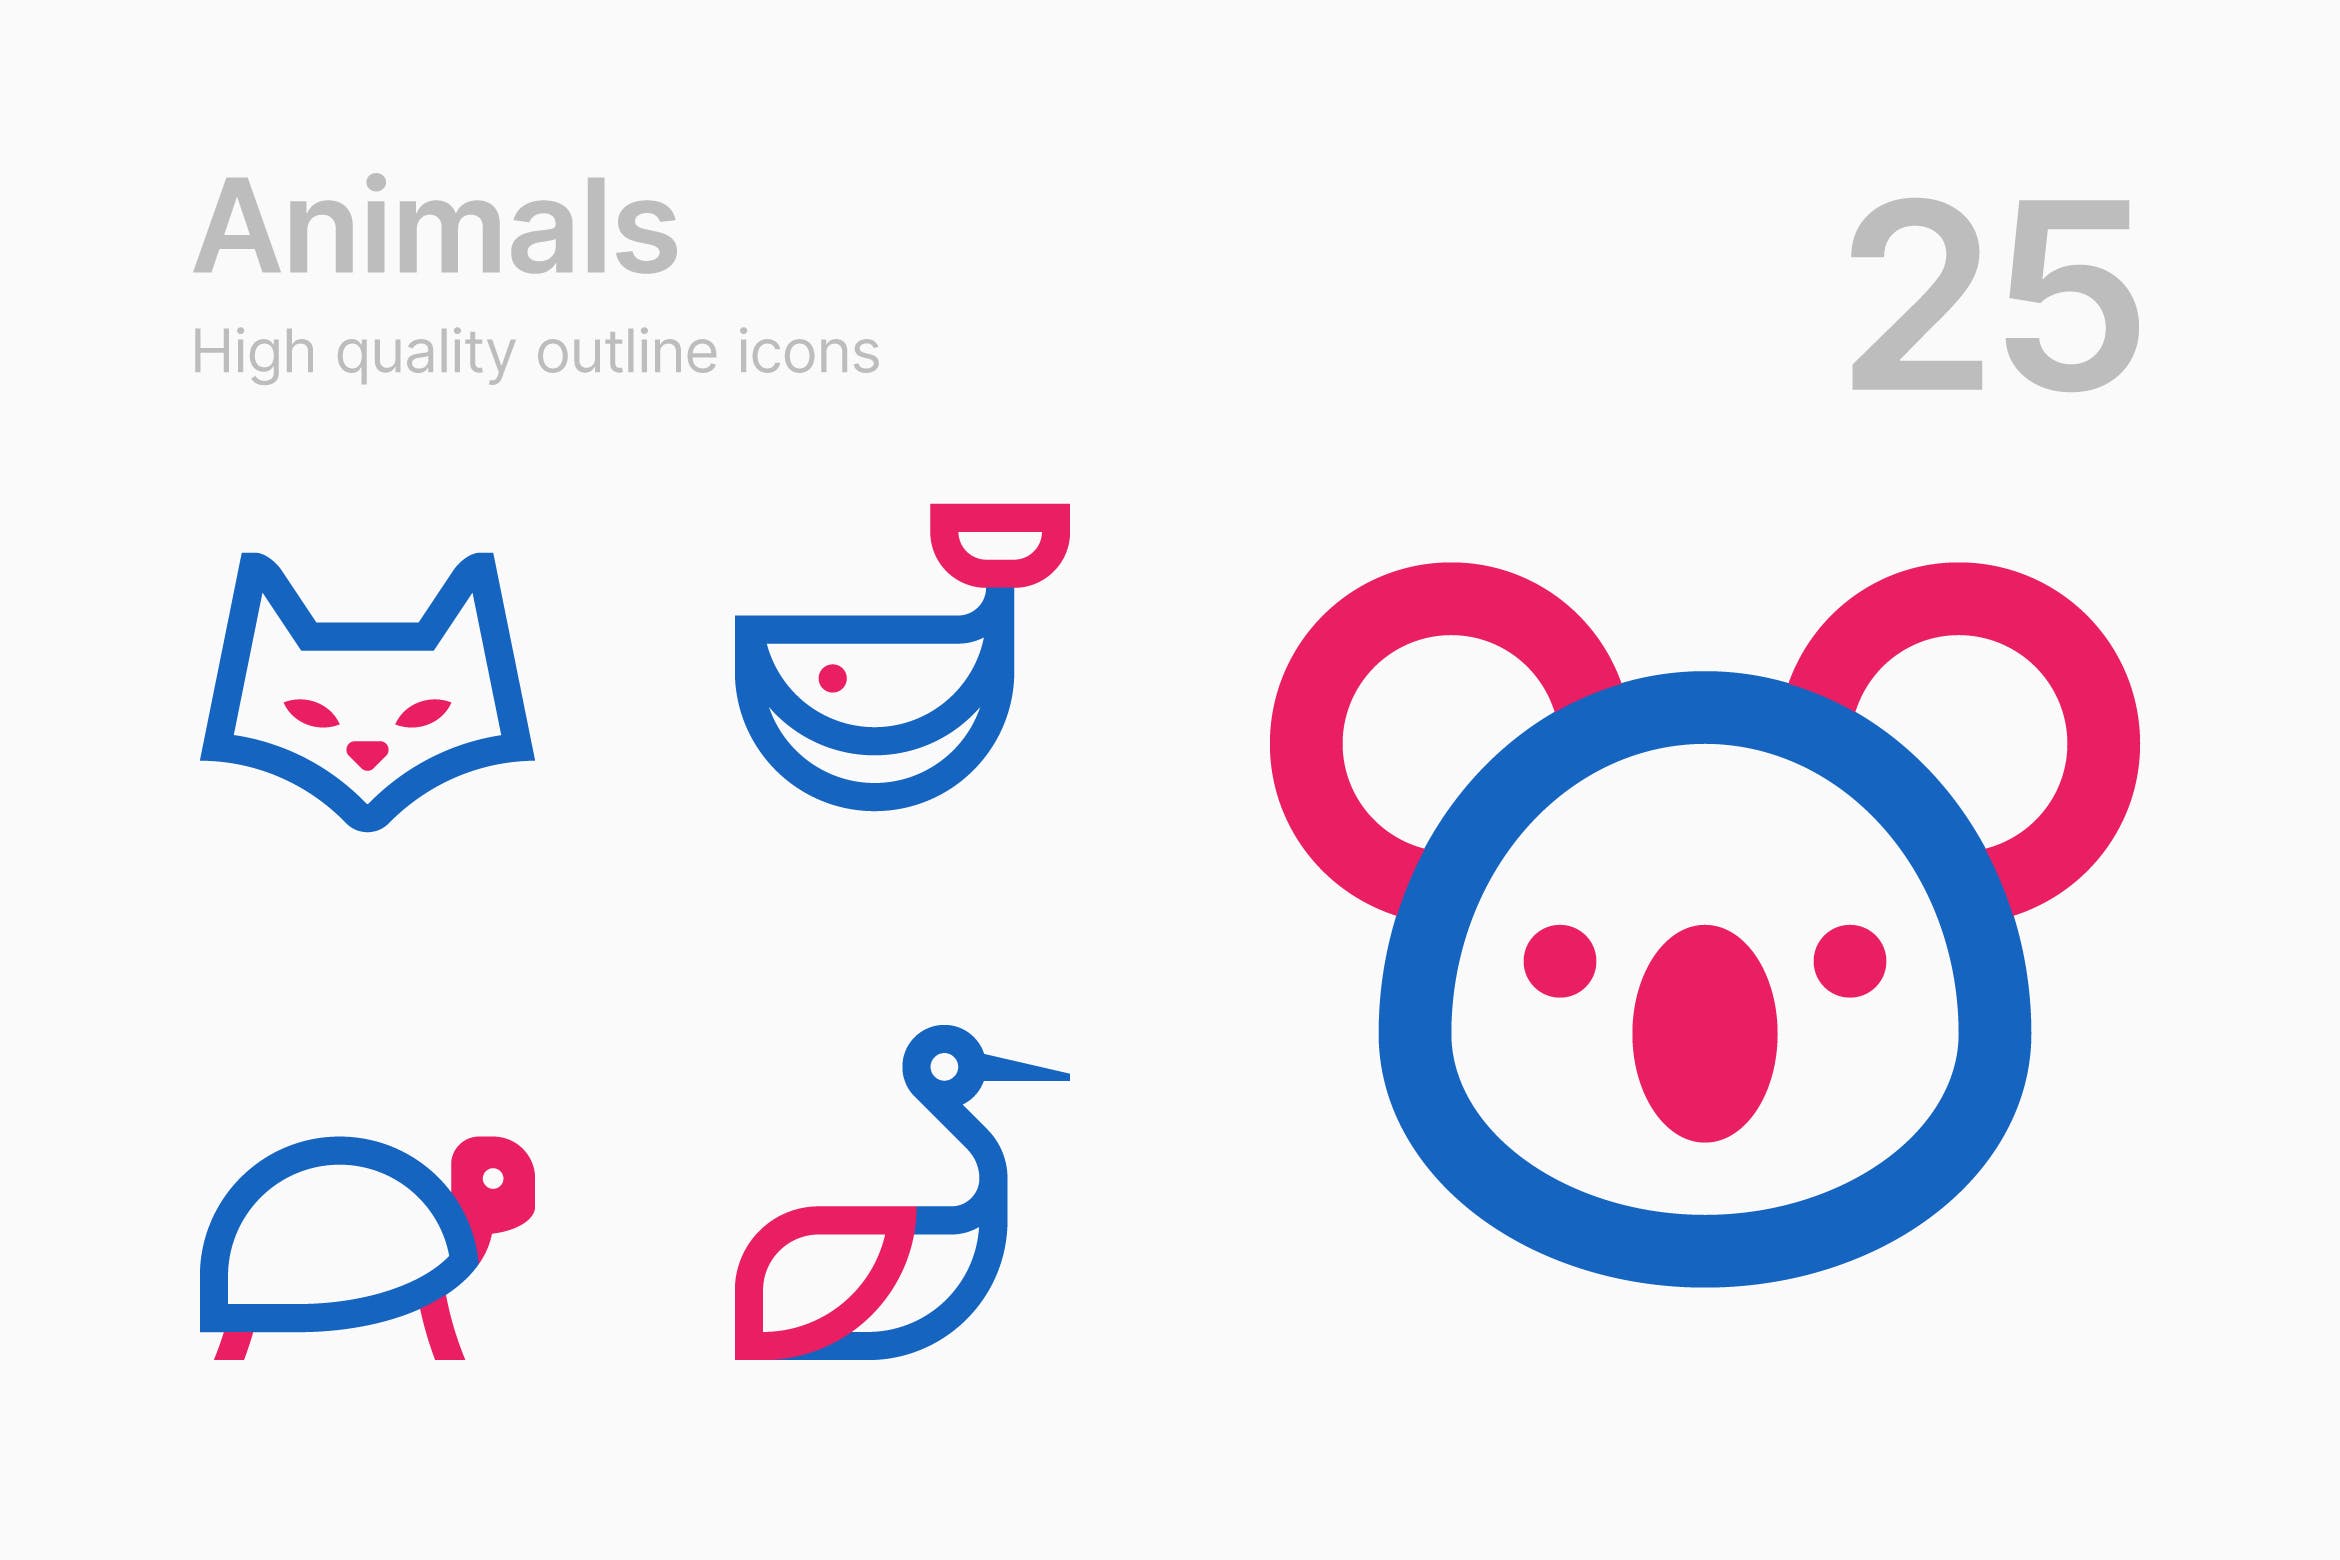 25枚动物简笔画图形矢量素材库精选图标v2 Animals #2插图